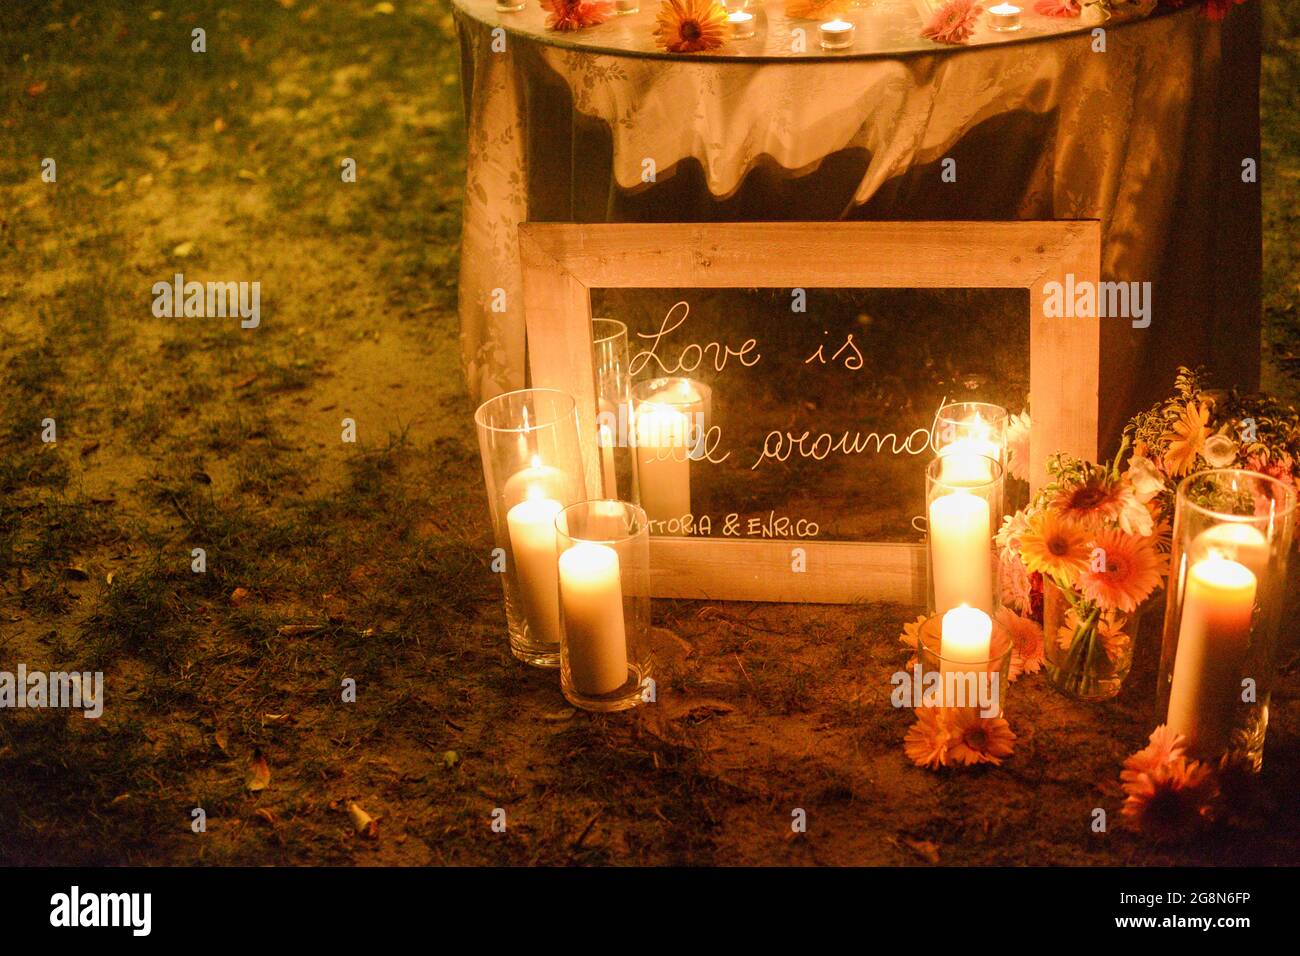 Cornice in legno su una citazione che dice 'l'amore è tutto intorno' con candele luminose a terra di notte Foto Stock